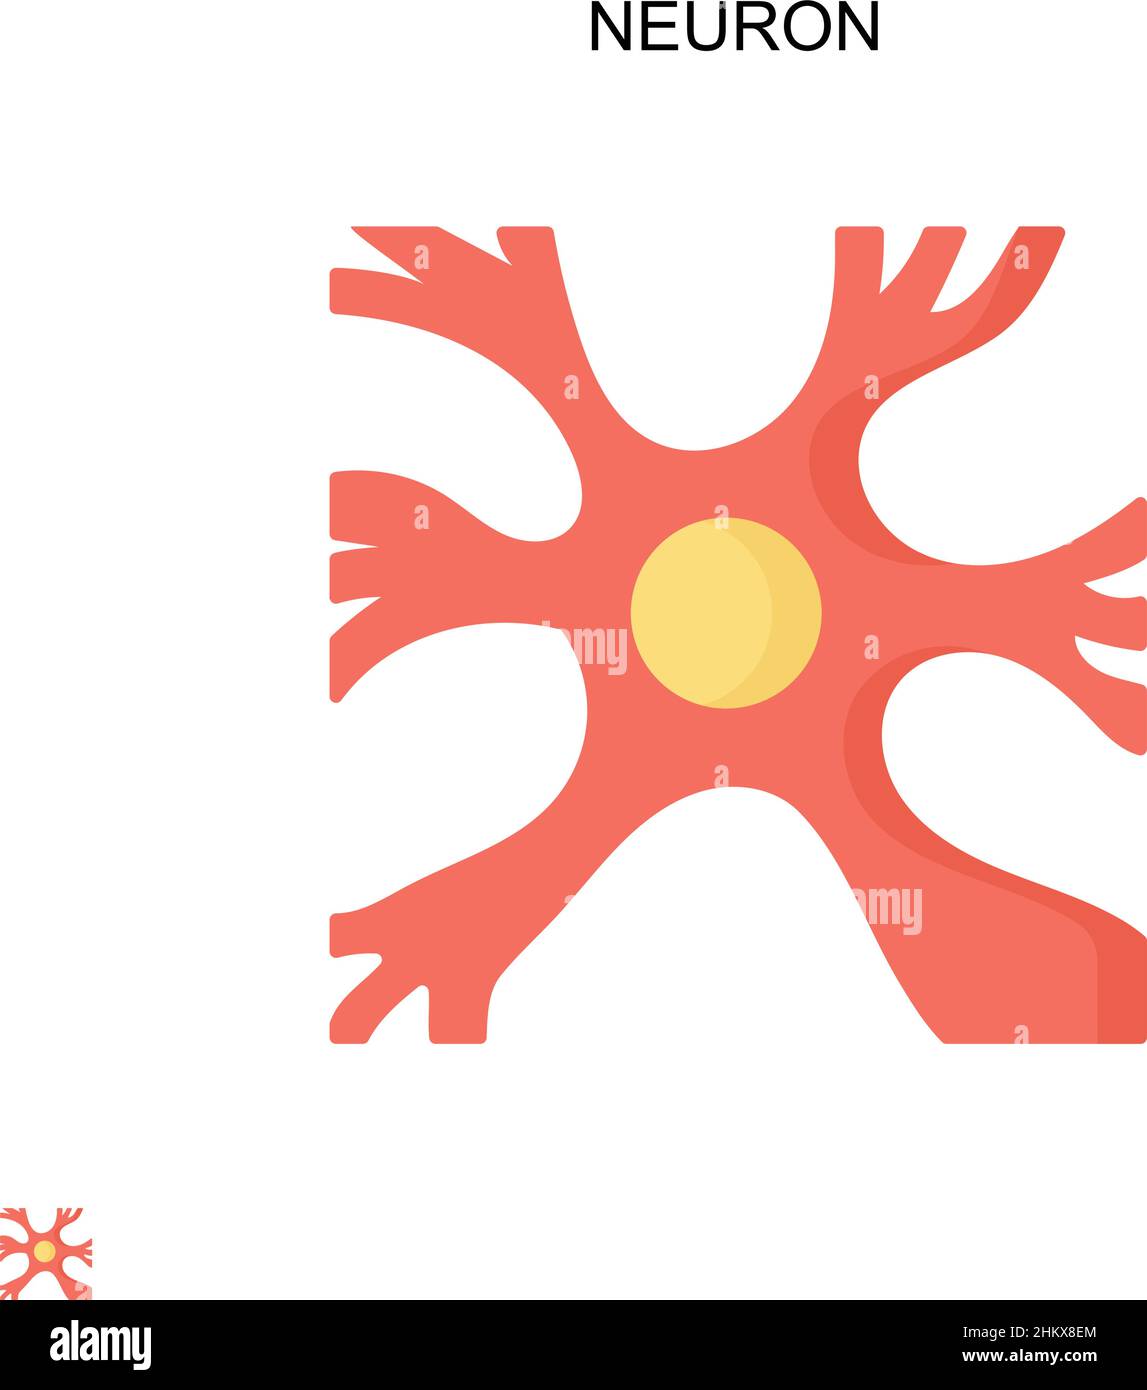 Einfaches Vektorsymbol für Neuronen. Illustration Symbol Design-Vorlage für Web mobile UI-Element. Stock Vektor